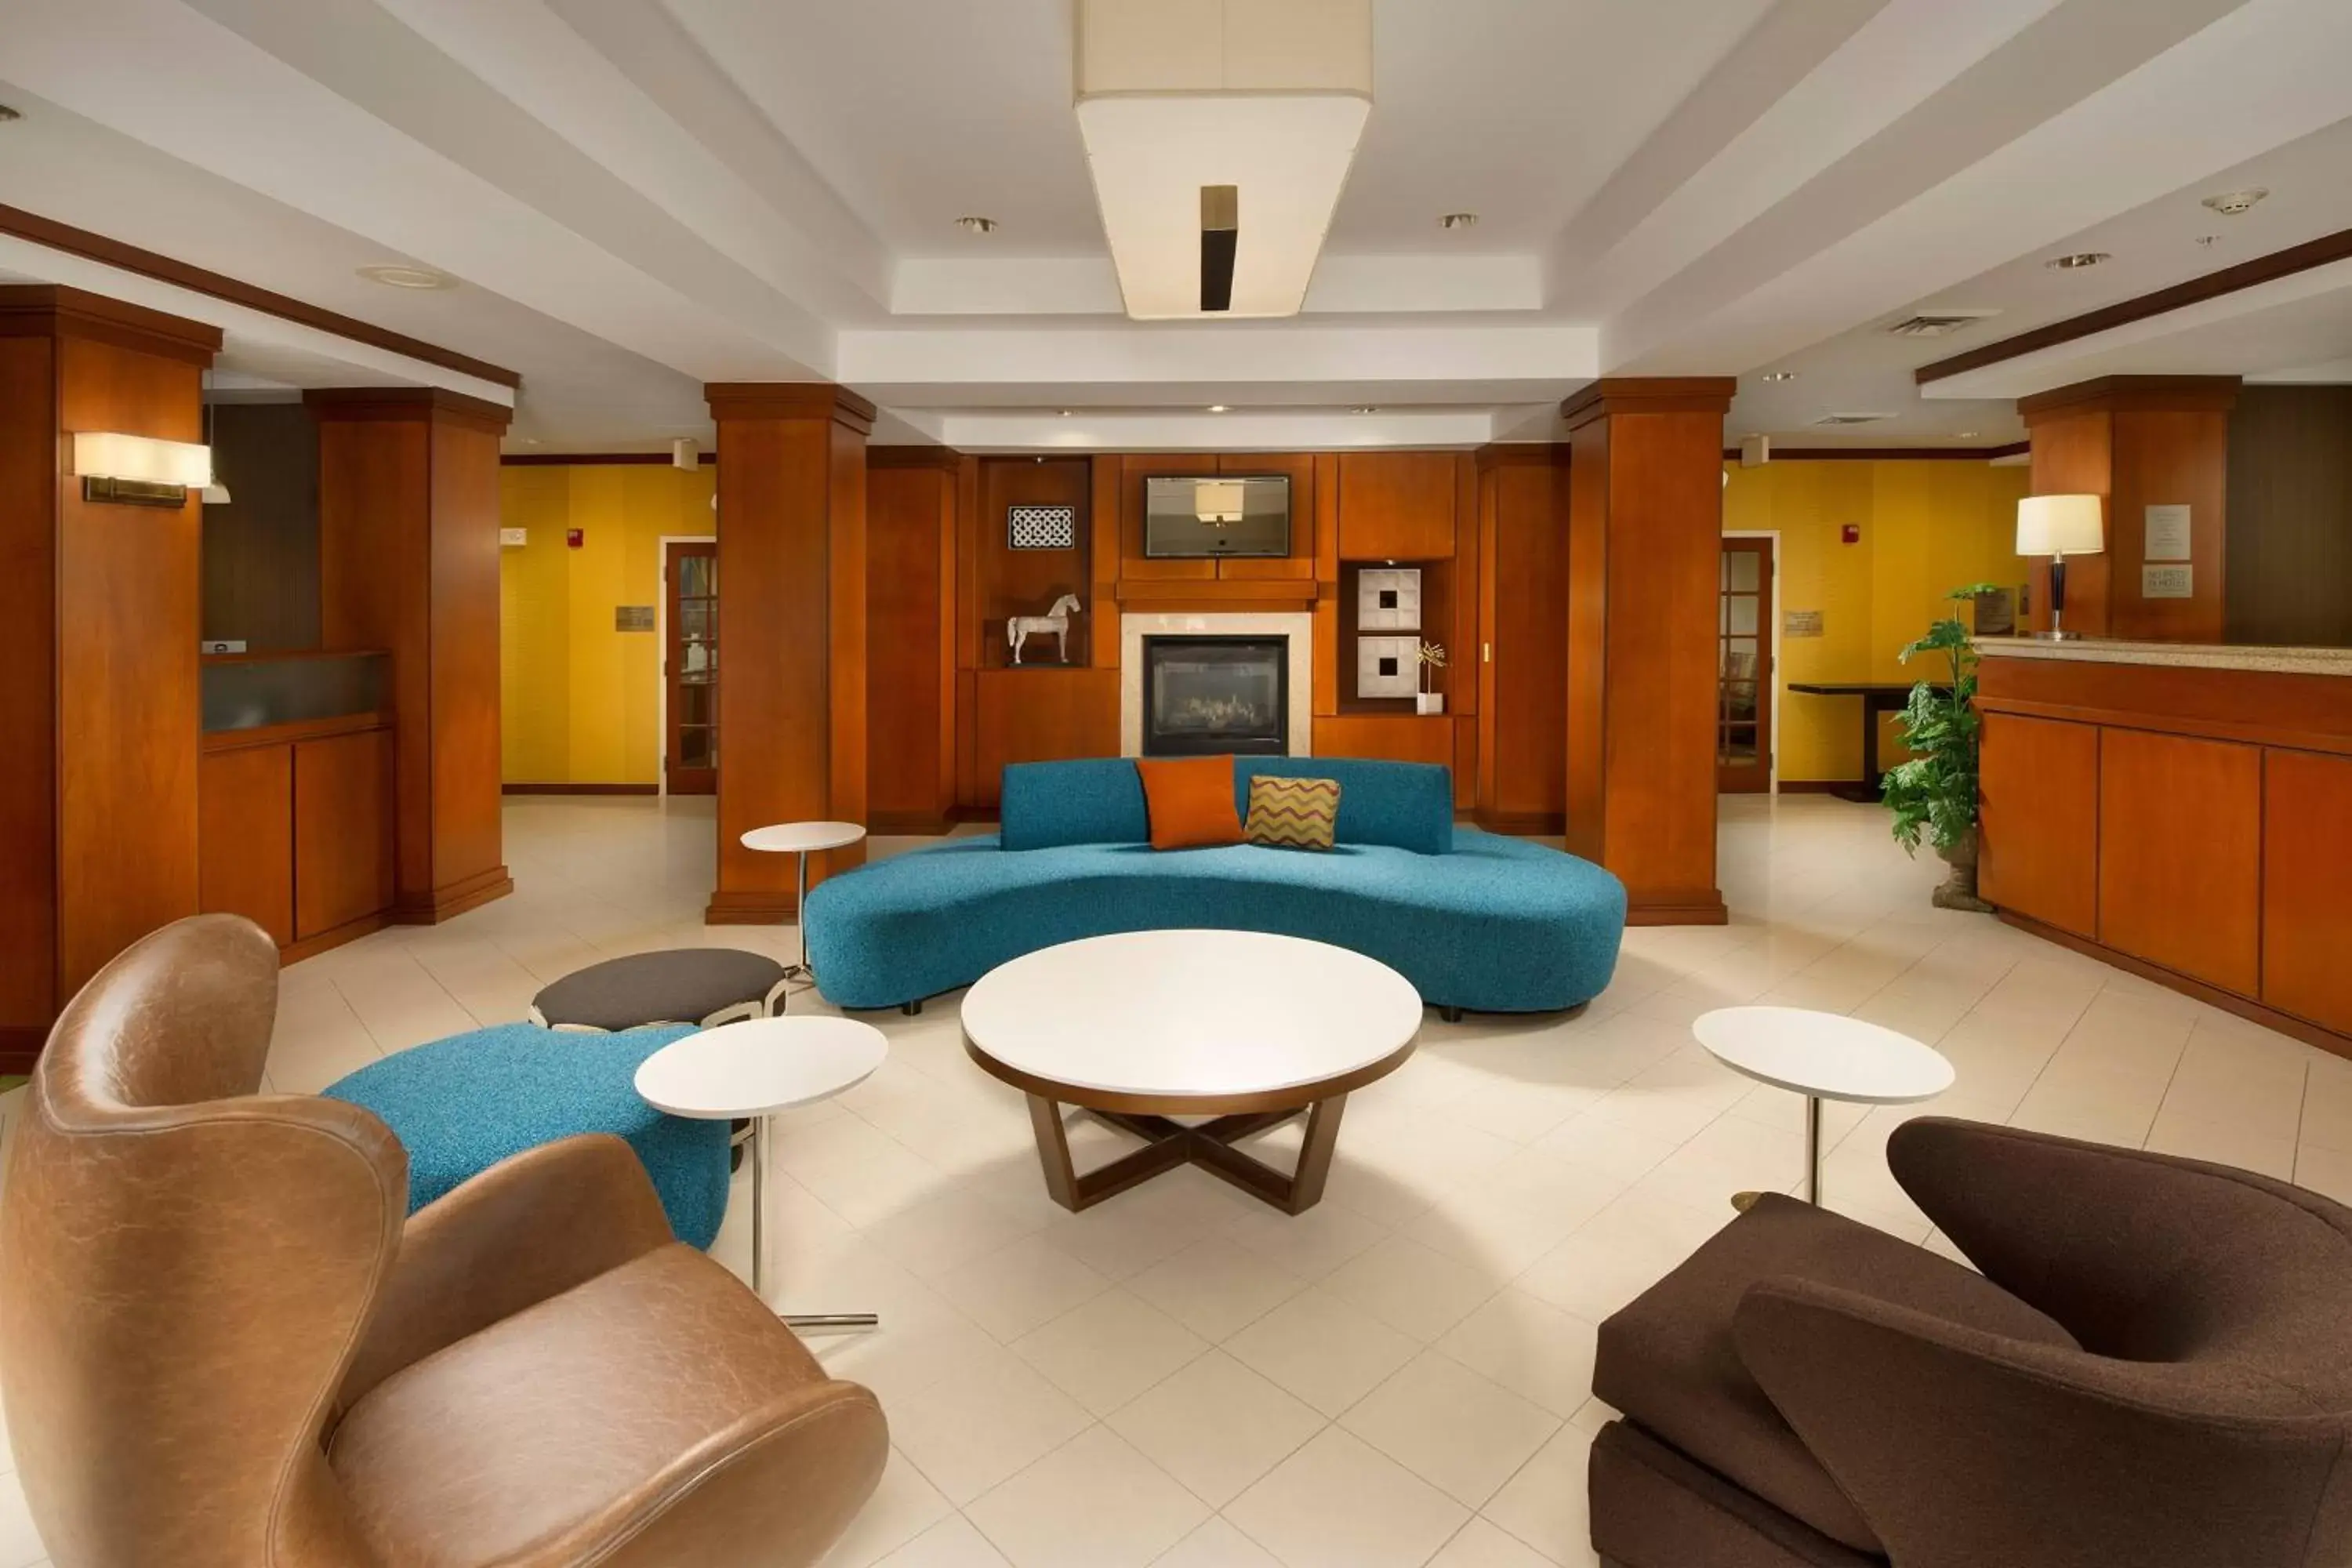 Lobby or reception in Fairfield Inn & Suites by Marriott Marshall